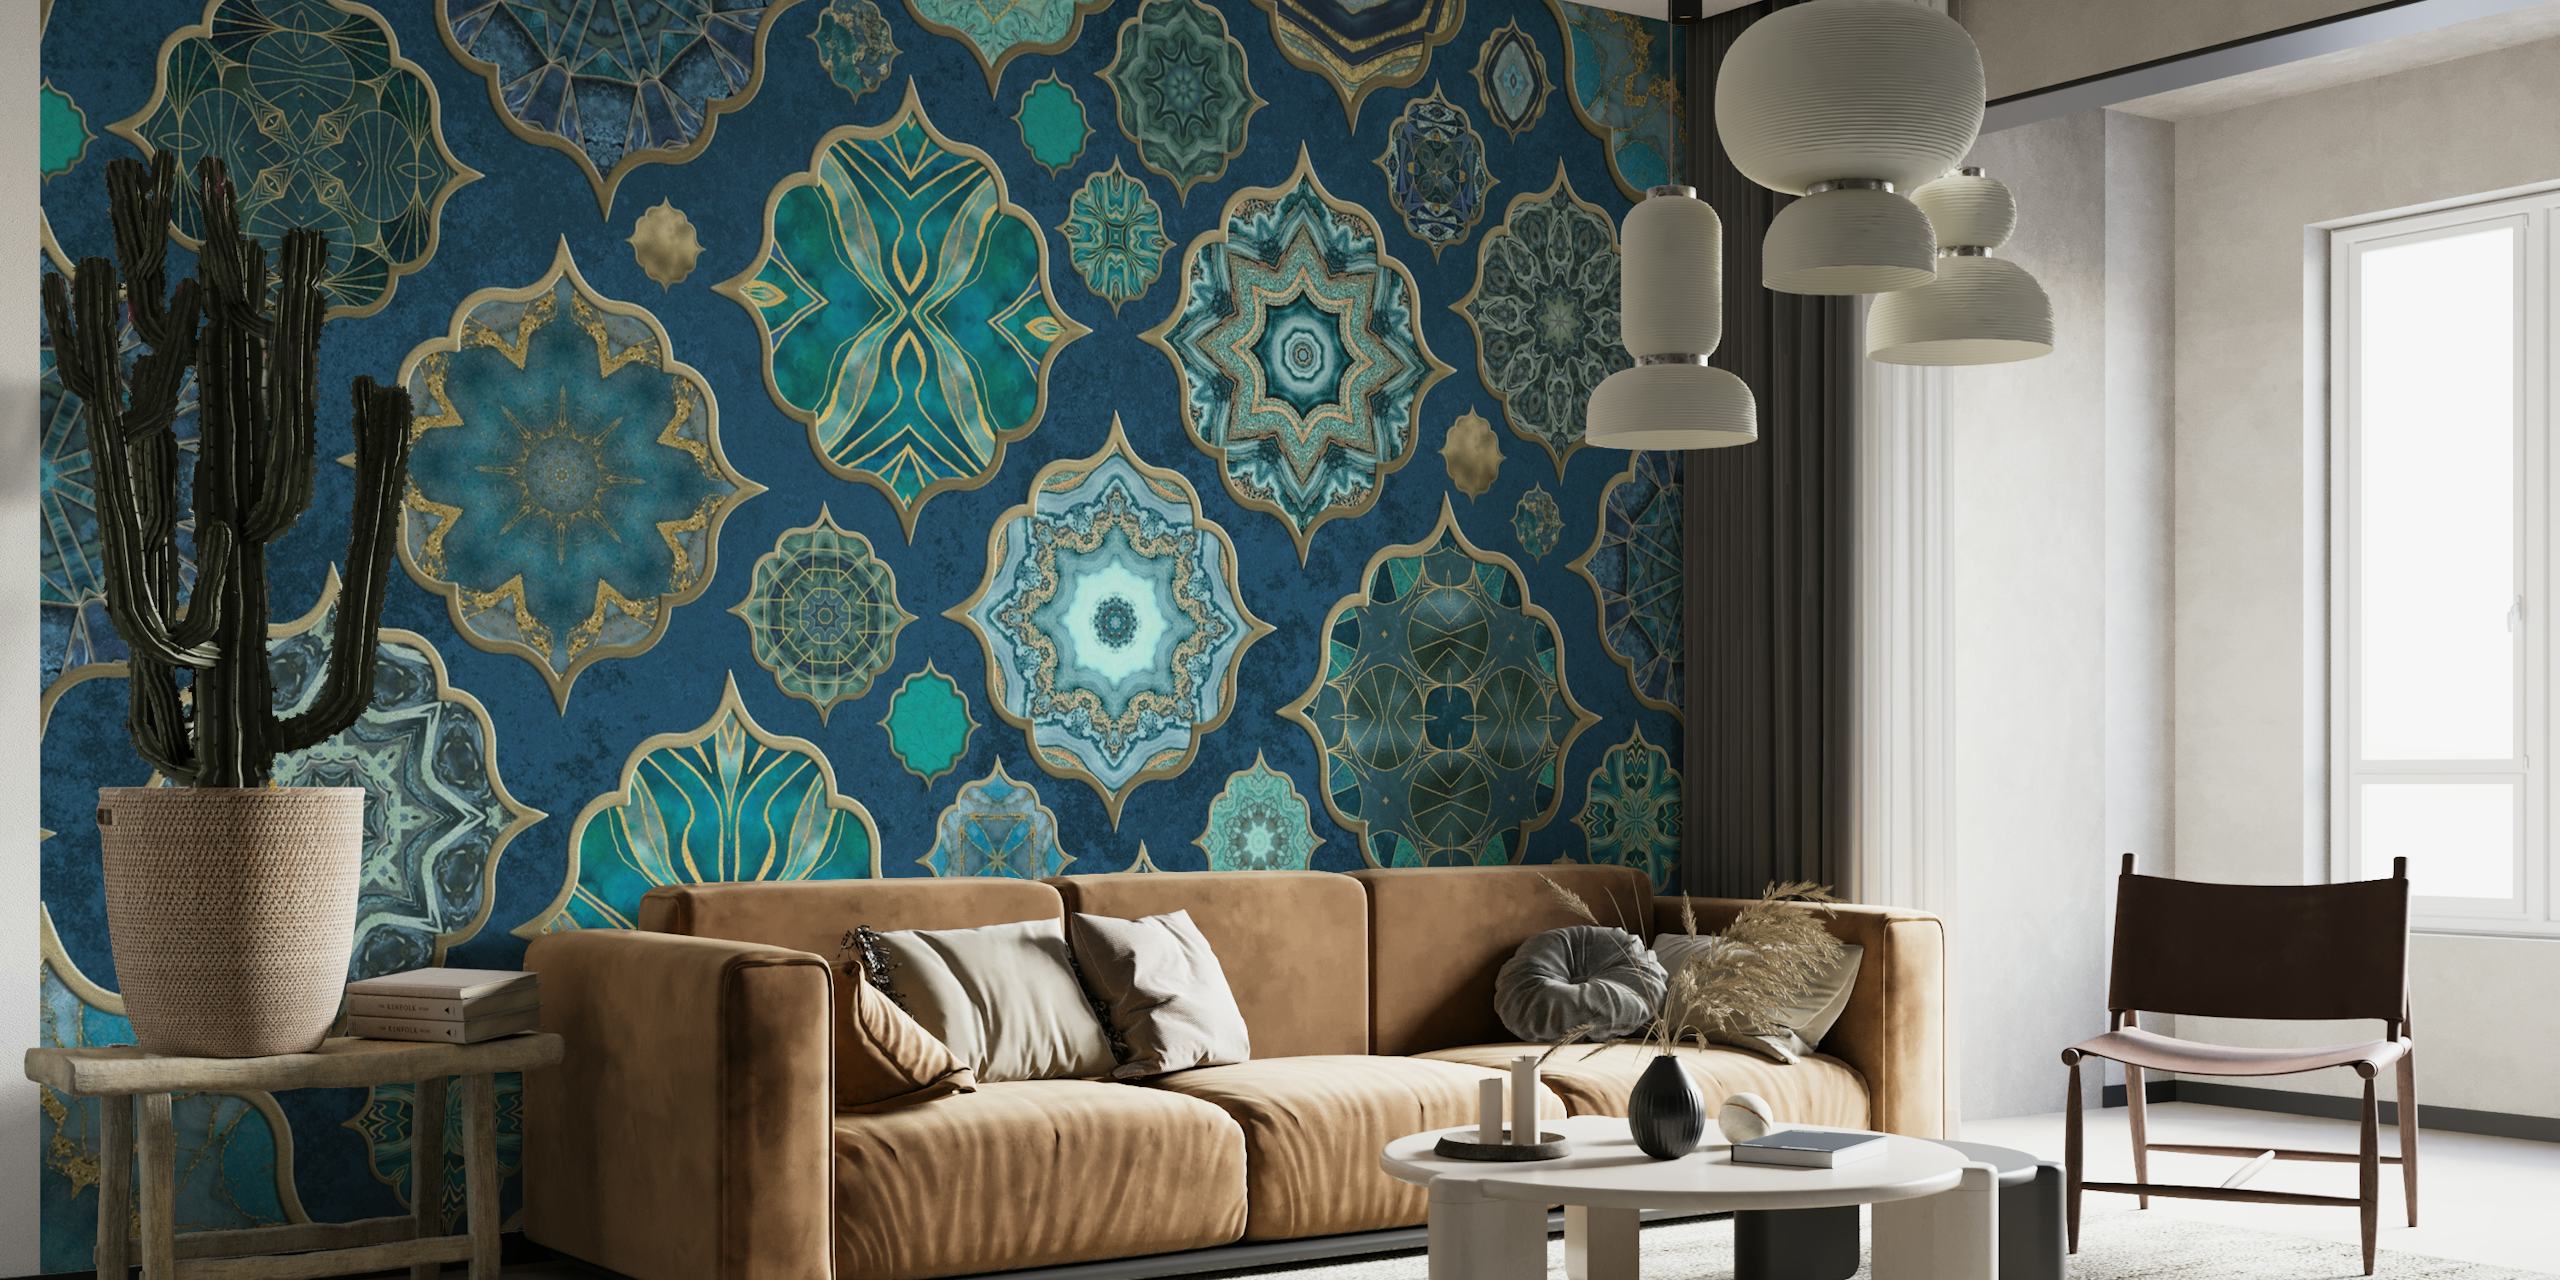 Zidna slika s uzorkom pločica u marokanskom stilu u nijansama plavoplave i tamnoplave sa zlatnim detaljima